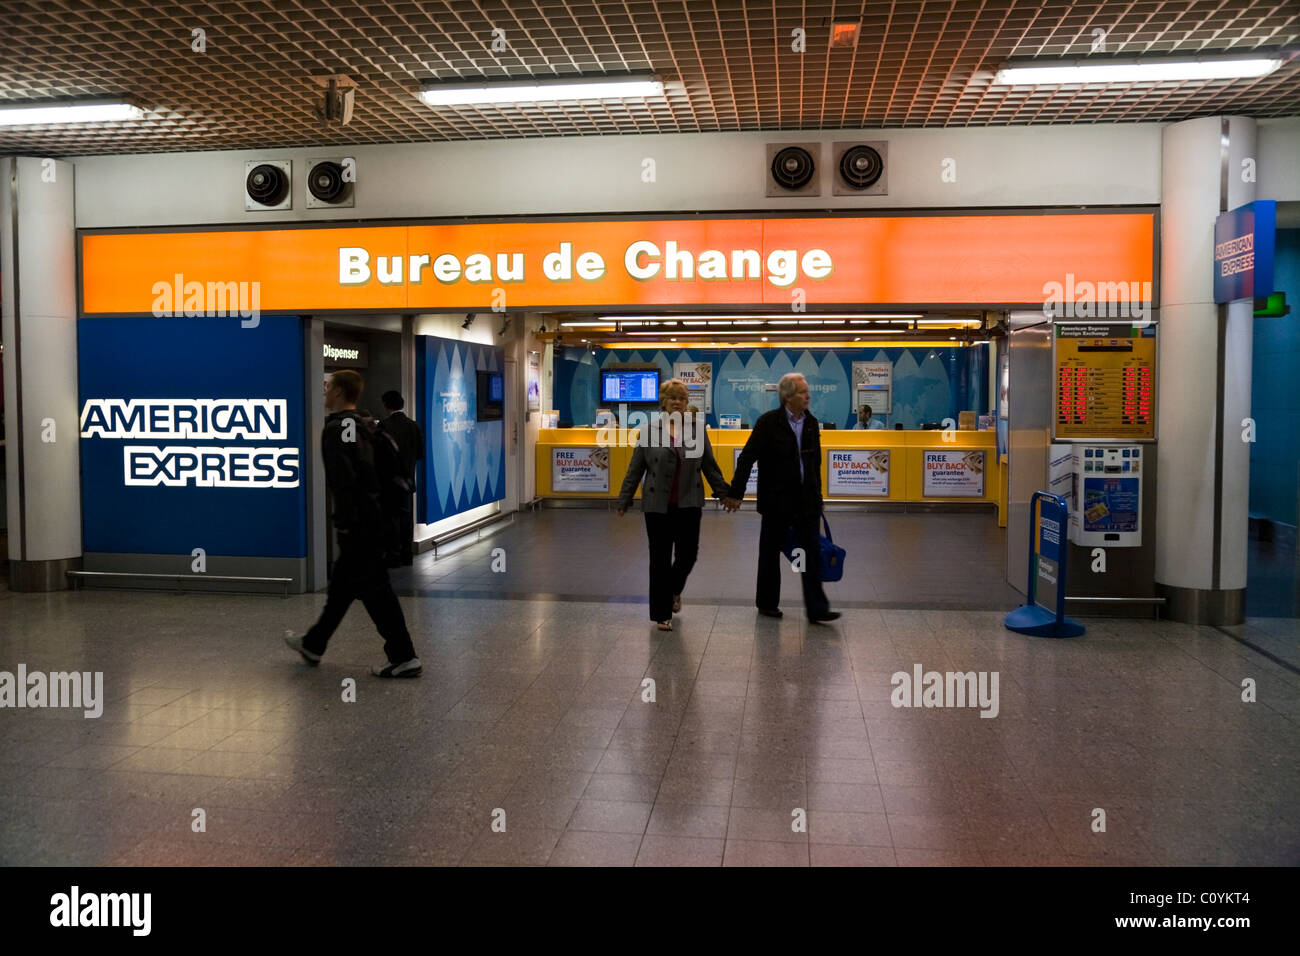 Bureau de Change Office operati da American Express presso l'aeroporto di Heathrow, terminale 3 / 3. Londra. Regno Unito. Foto Stock